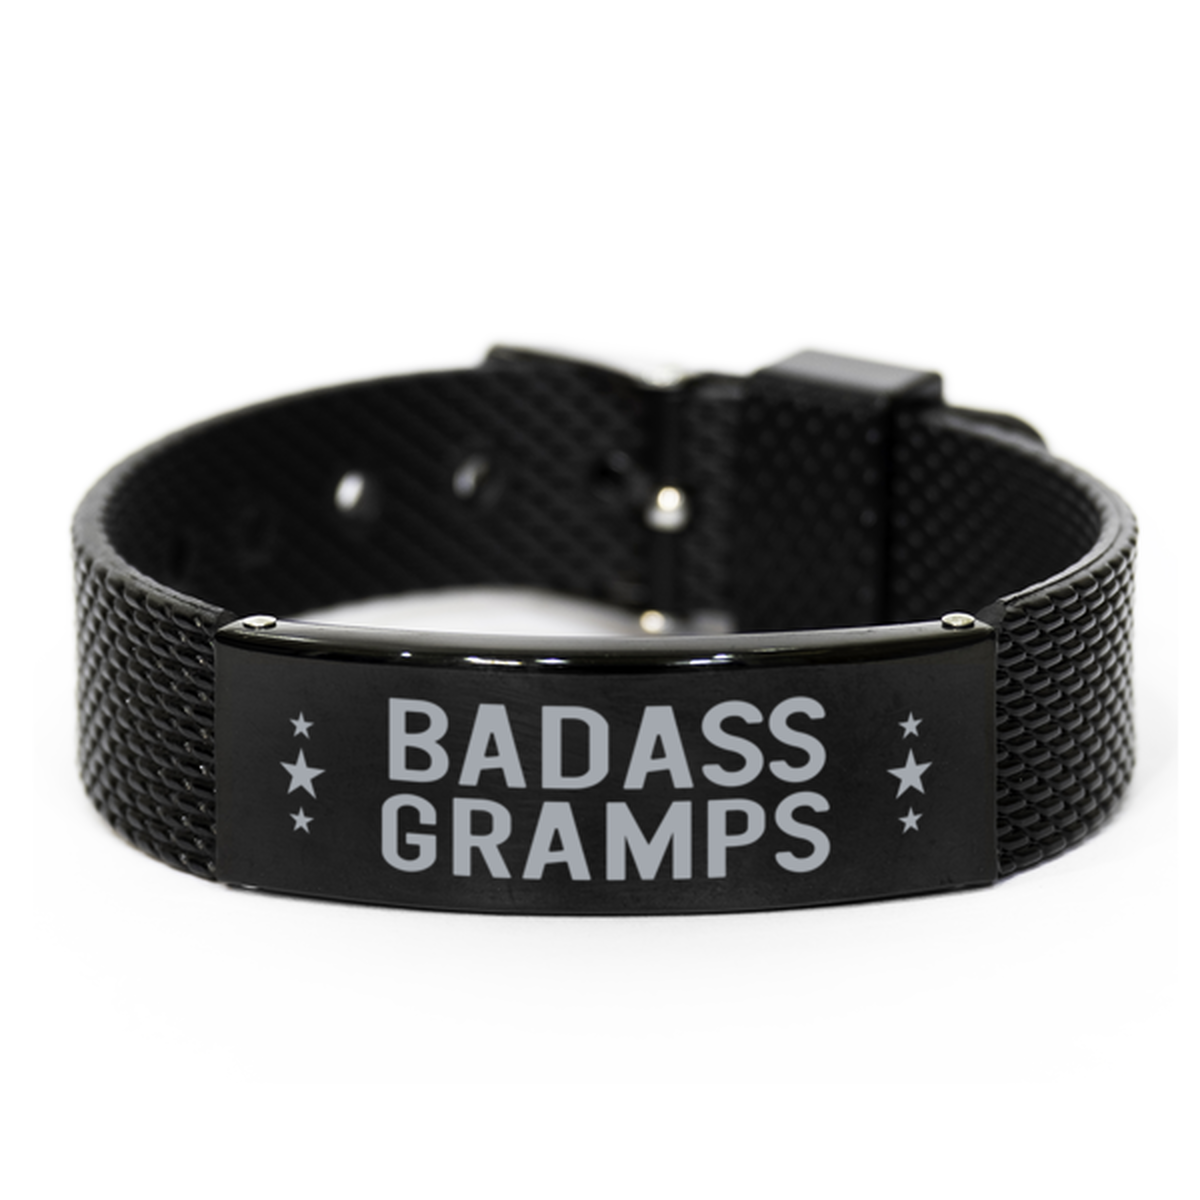 Gramps Black Shark Mesh Bracelet, Badass Gramps, Funny Family Gifts For Gramps From Granddaughter Grandson